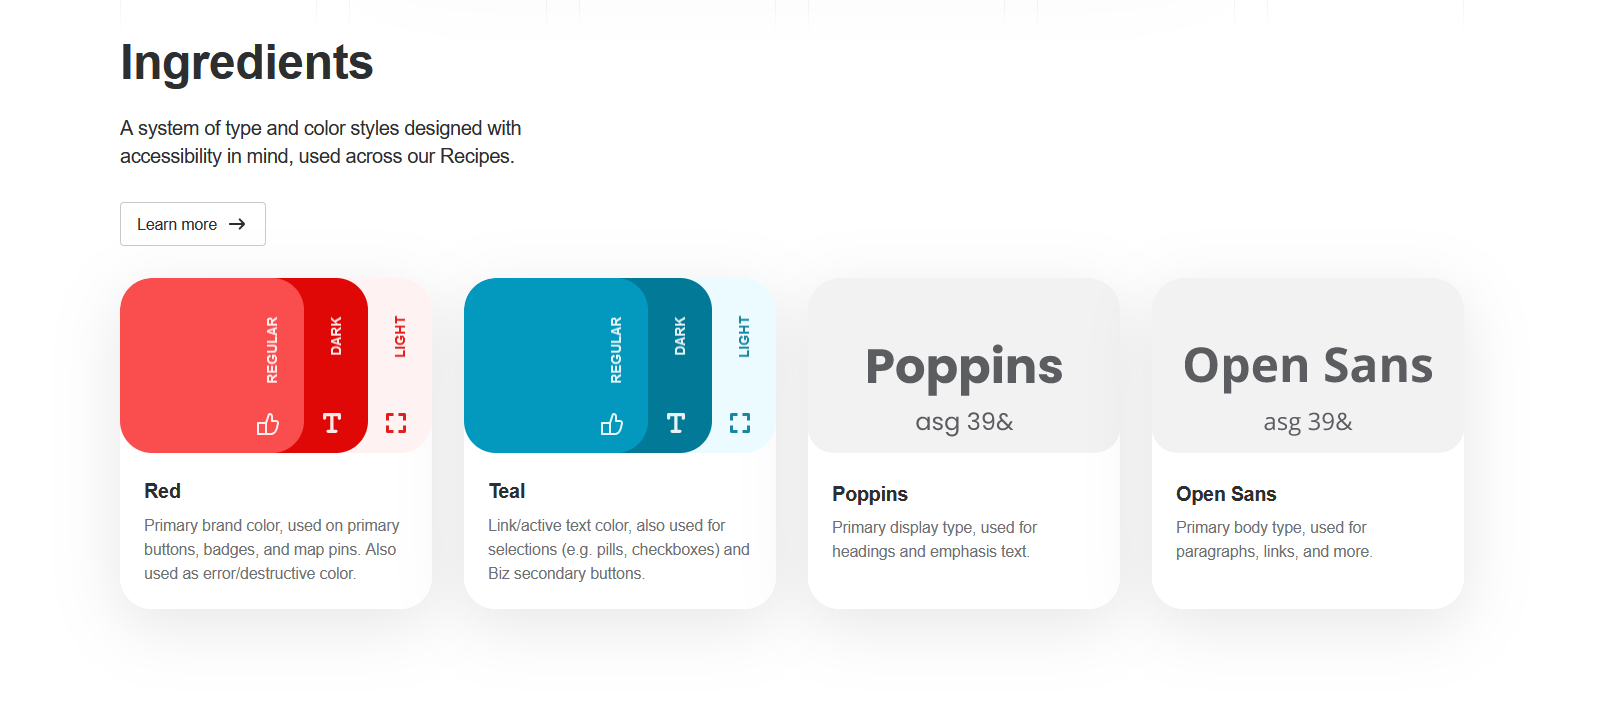 Captura de pantalla de los ingredientes en la guía de estilo web de Yelp